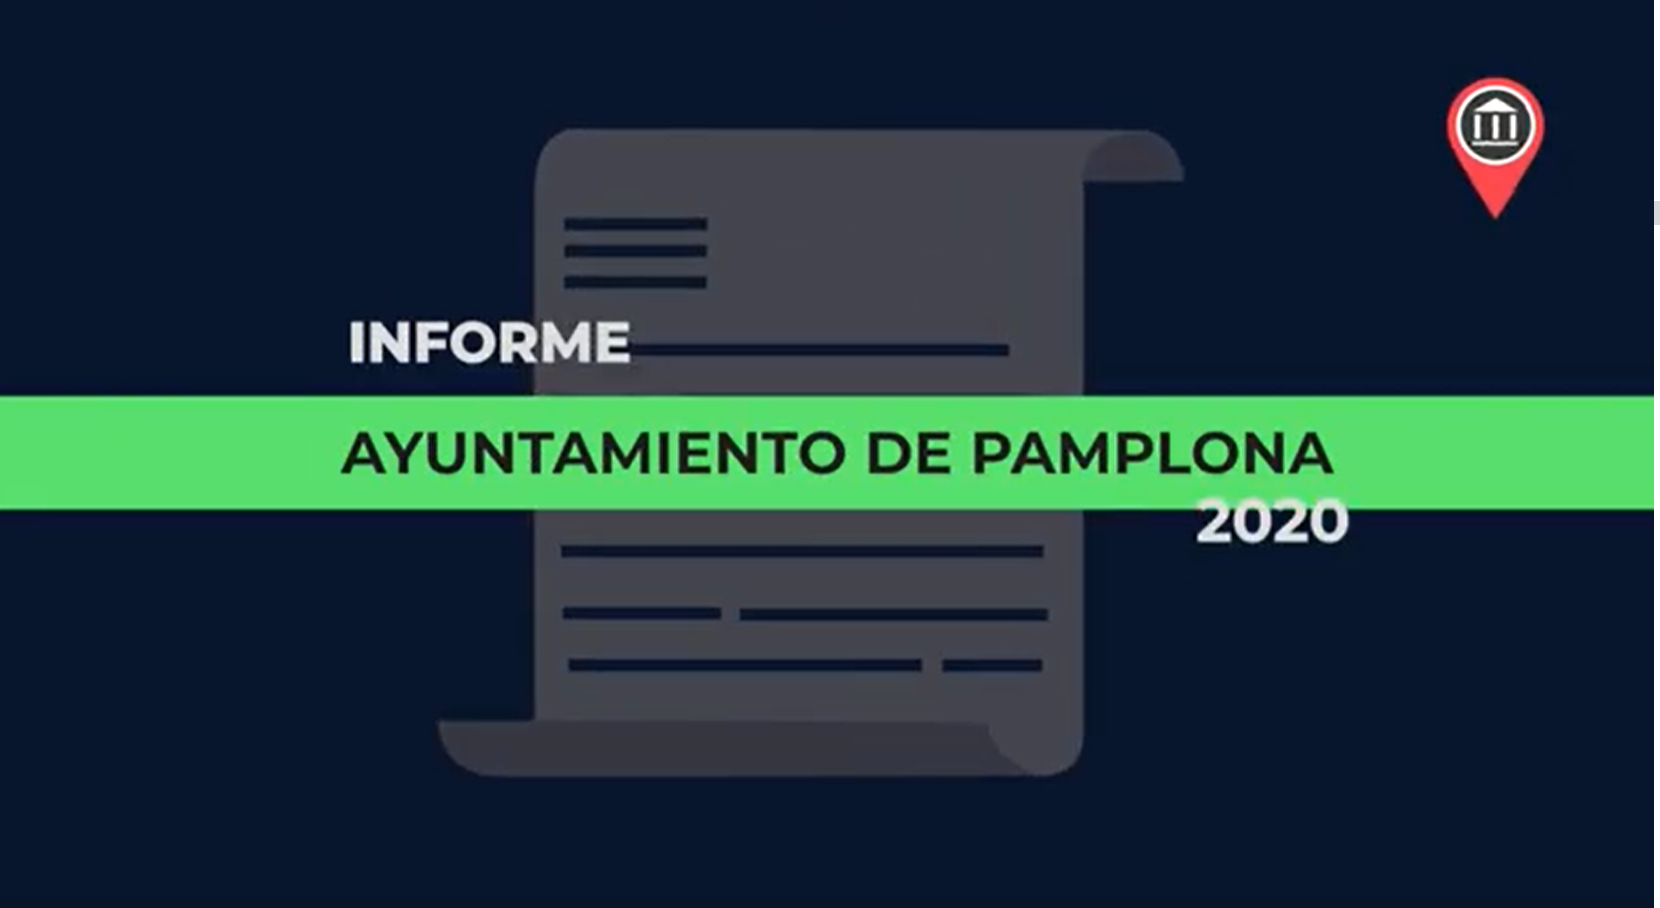 Informe de fiscalización del Ayuntamiento de Pamplona 2020